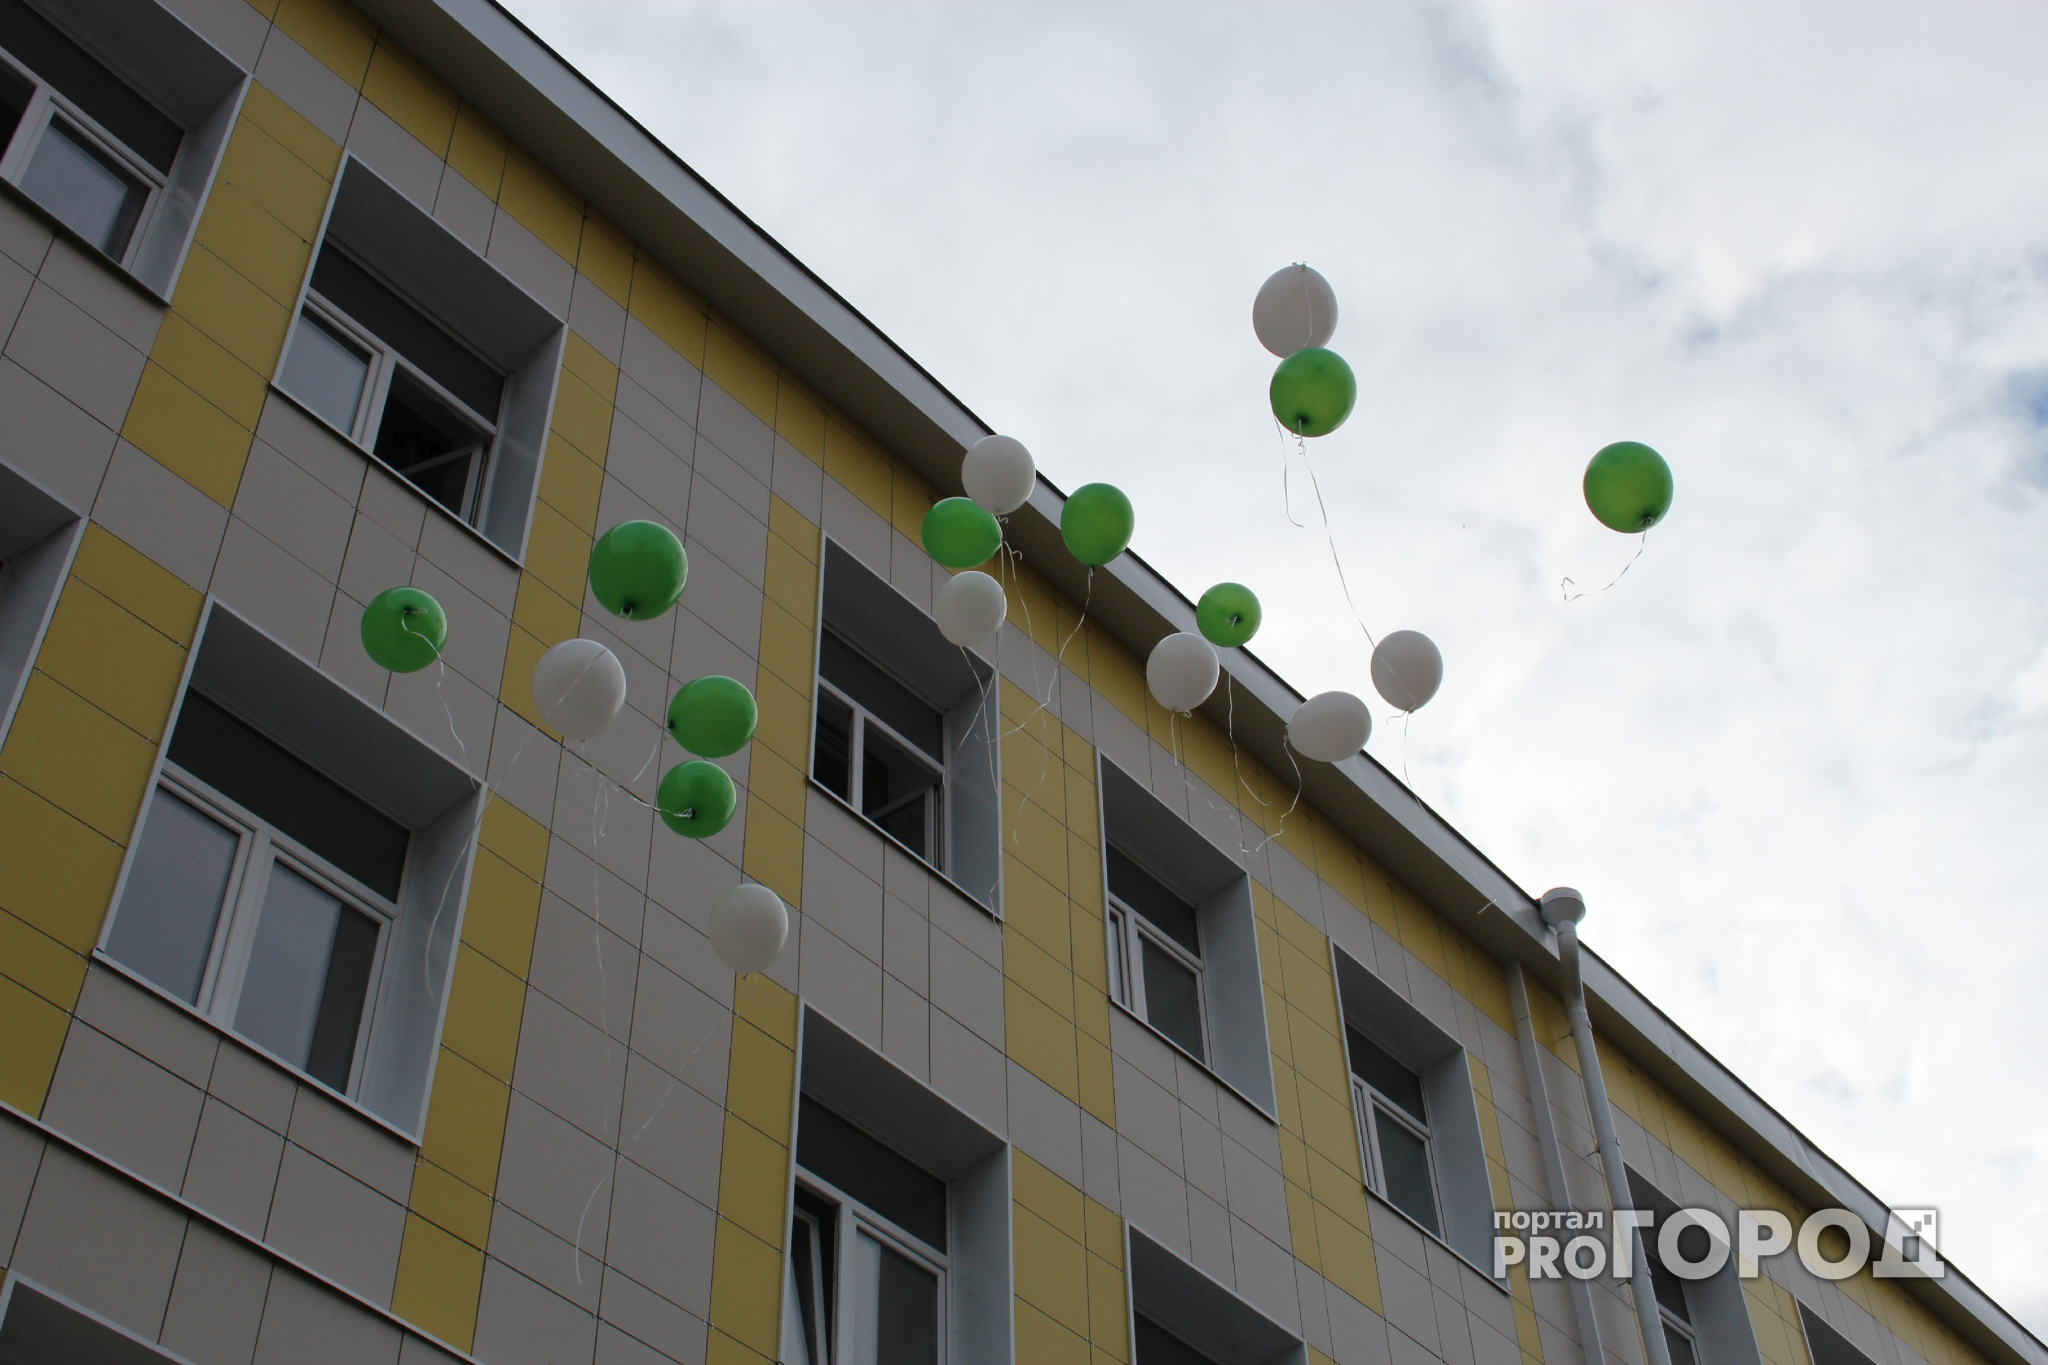 В марте школы Марий Эл могут получить гранты по 500, 300 и 200 тысяч рублей